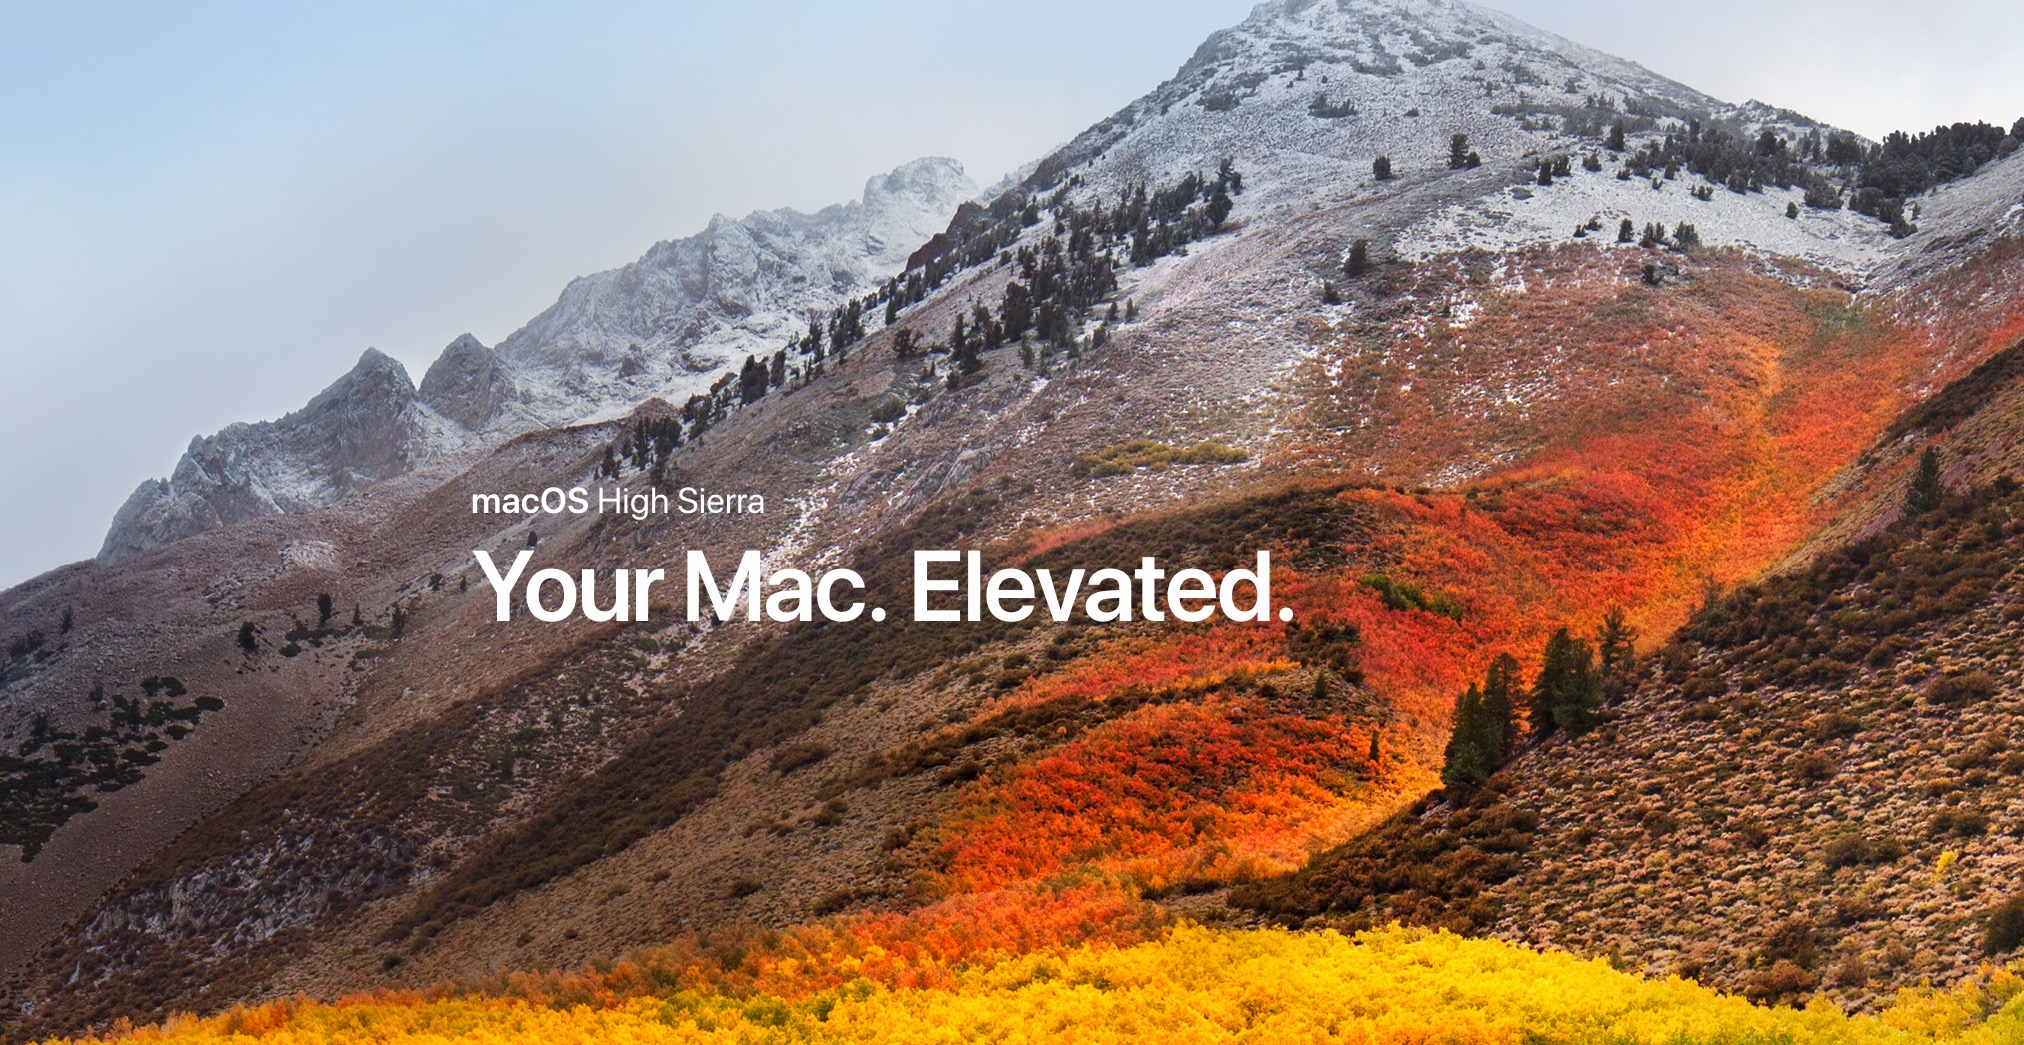 Hướng dẫn cách tạo bộ cài macOS High Sierra 10.13